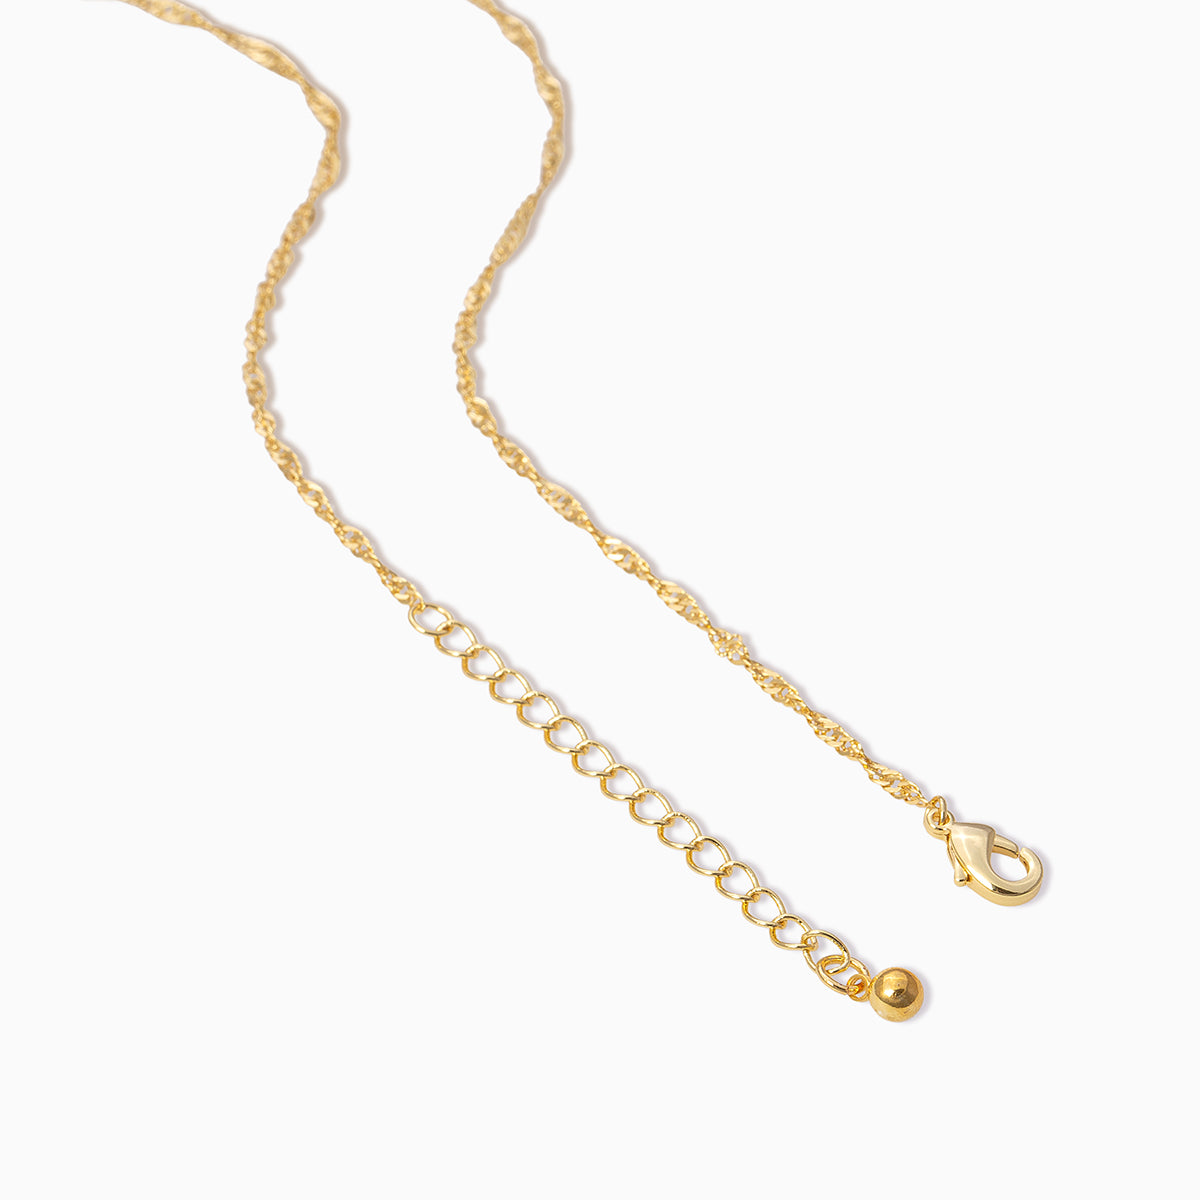 Cowboy Hat Pendant Necklace | Gold | Product Detail Image 2 | Uncommon James